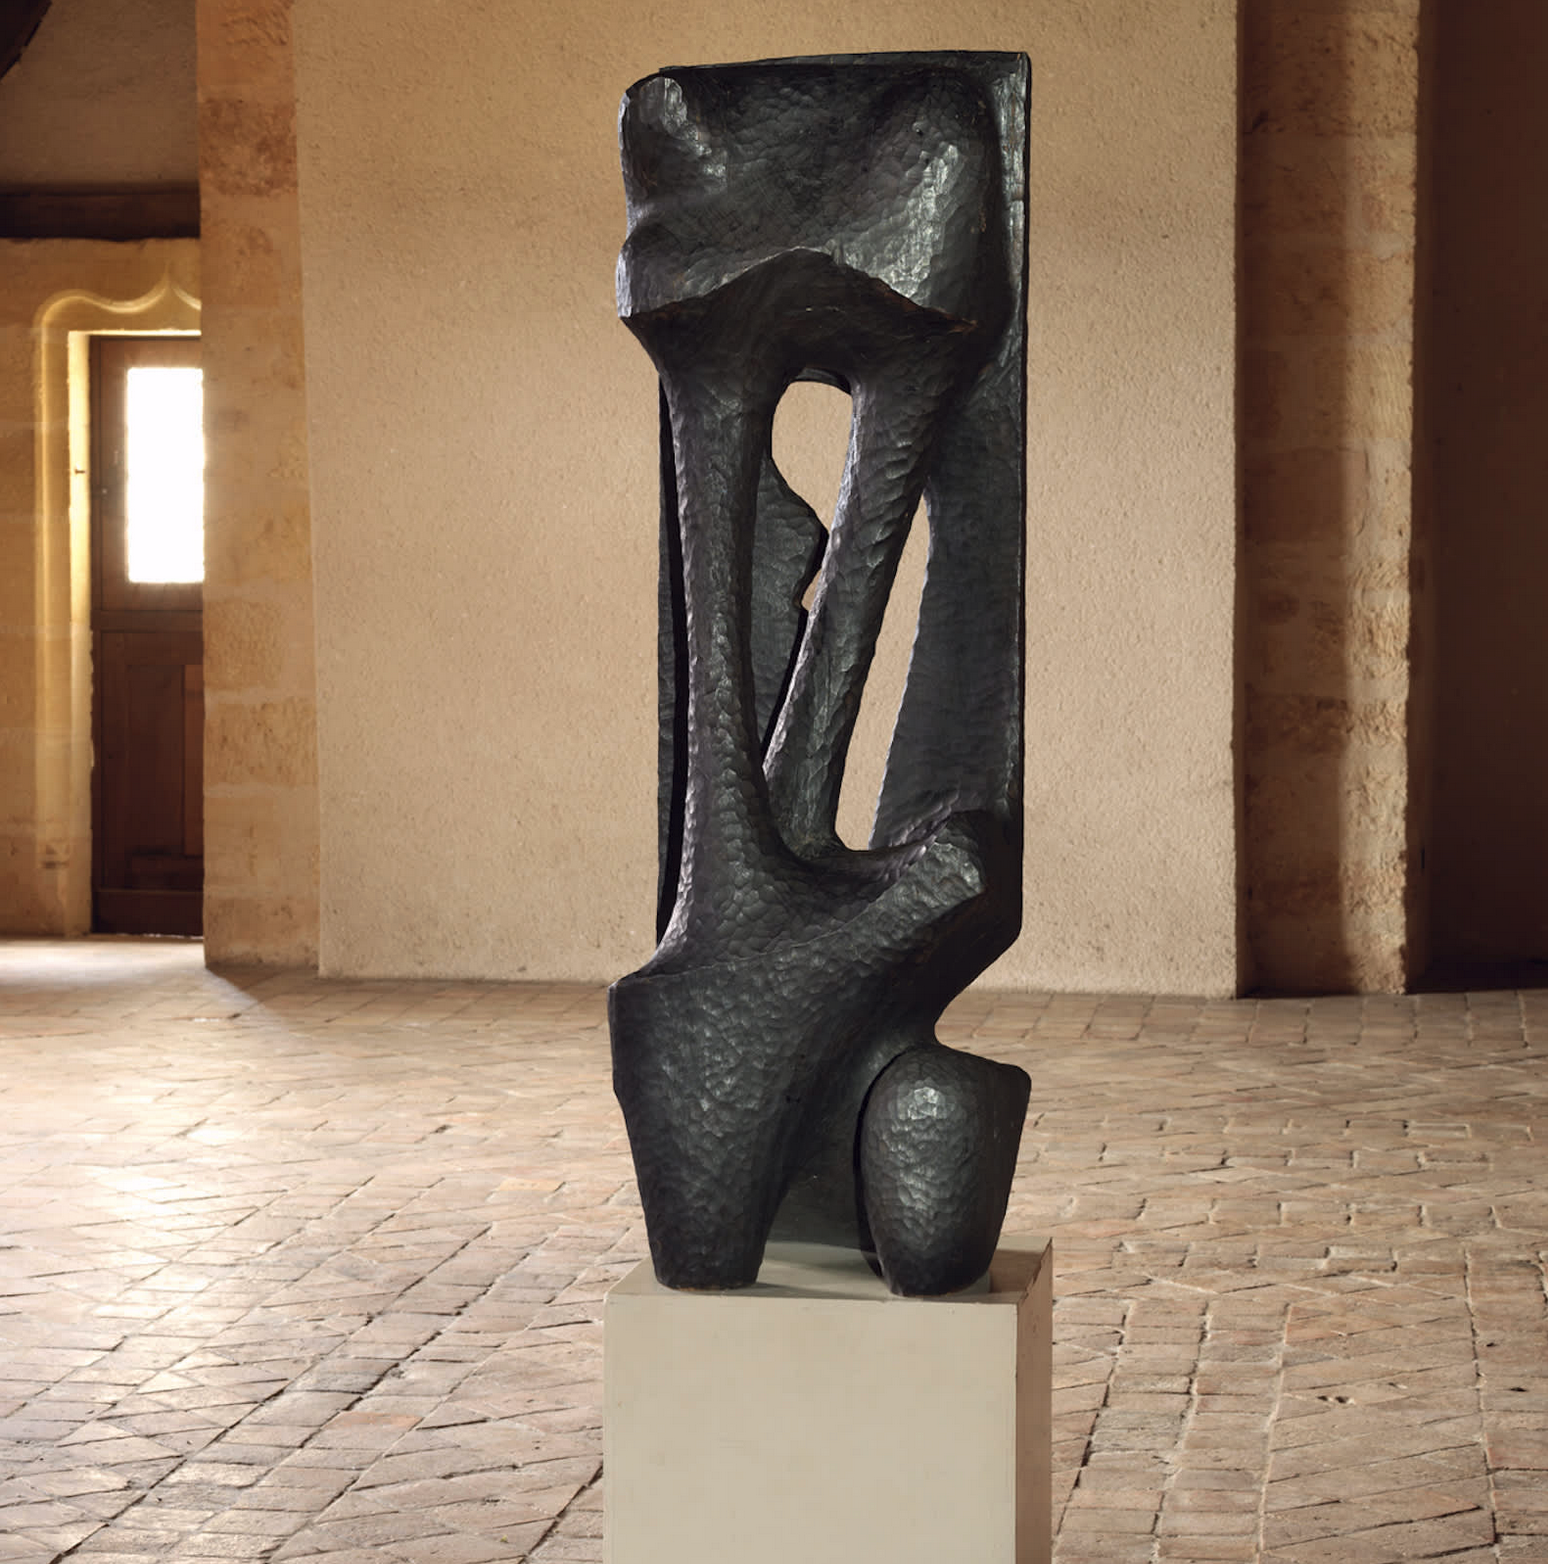 Escultura de Agustin Cardenas que la Galerie Mitterrand presenta en Art Basel Miami Beach, en el sector Survey.